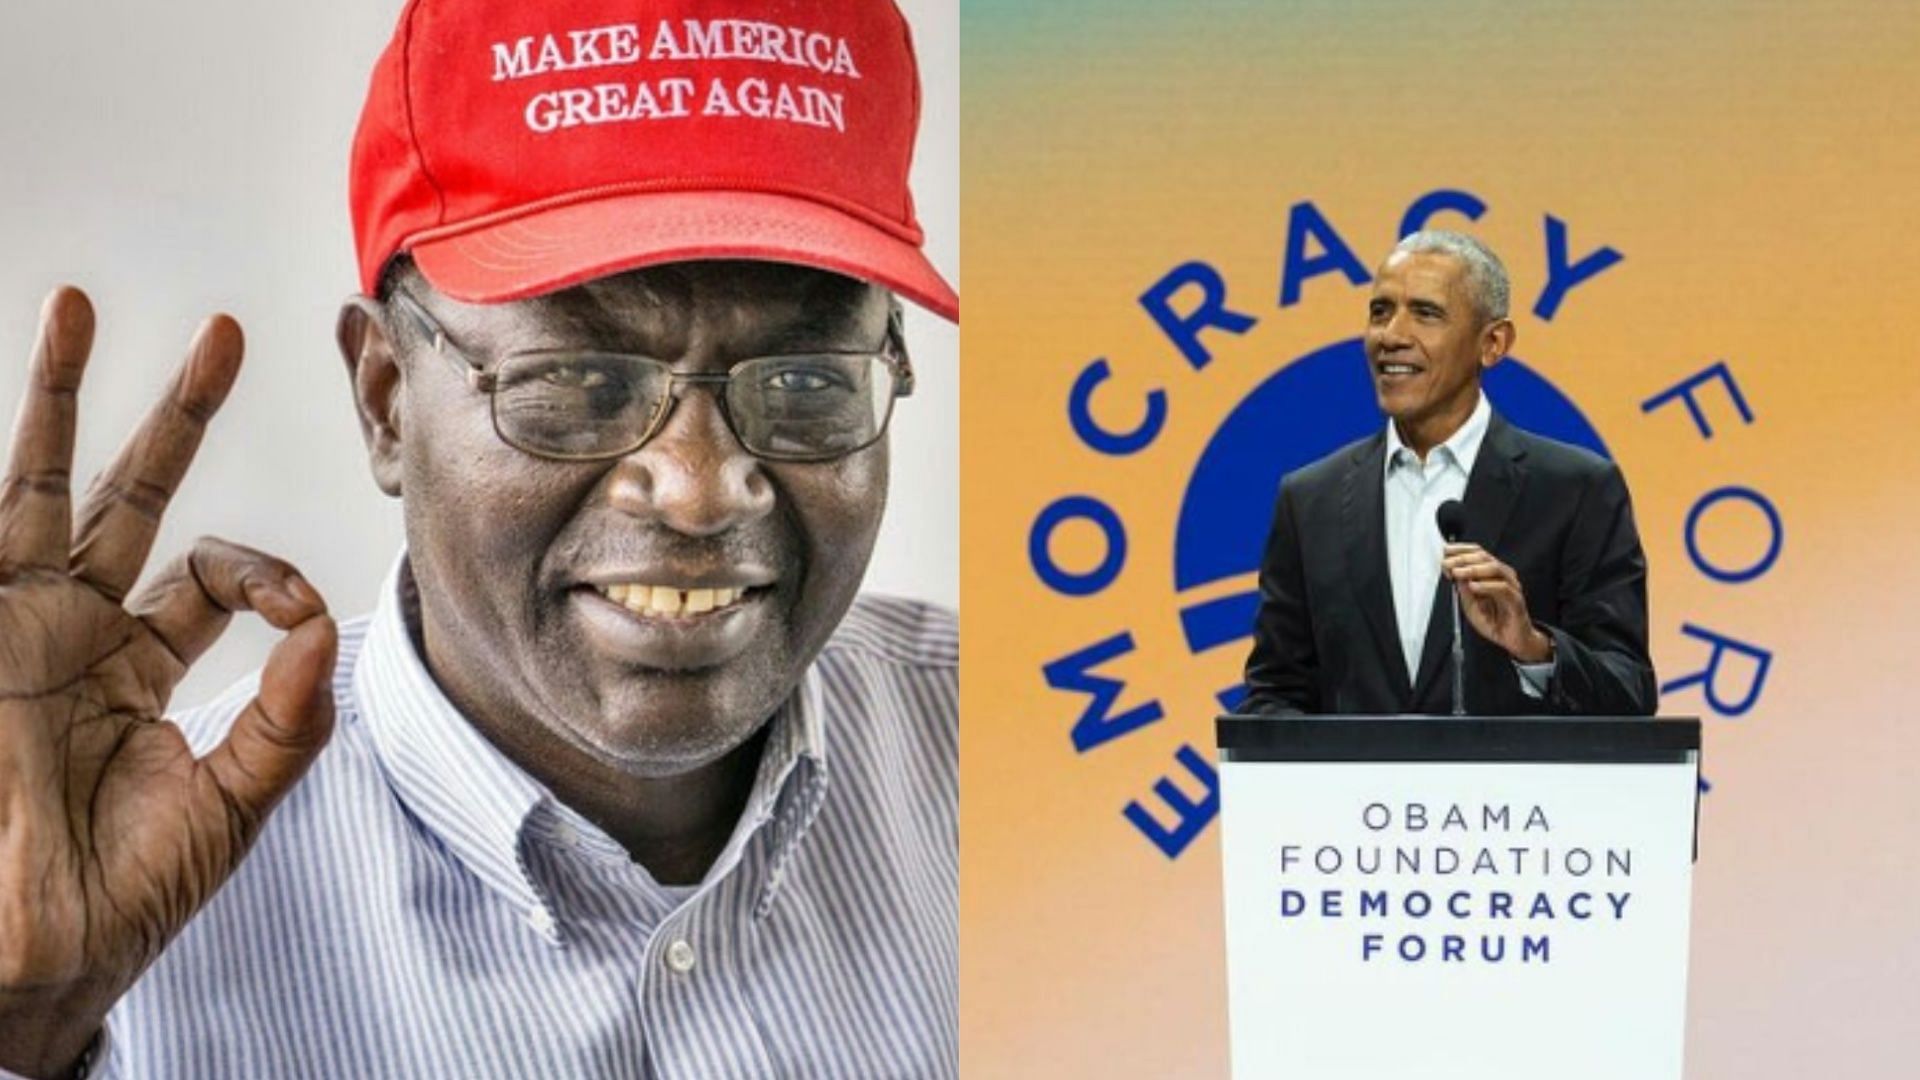 Malik Obama is the elder half-brother of Barack Obama. (Image via X/Malim Obama/Barack Obama)